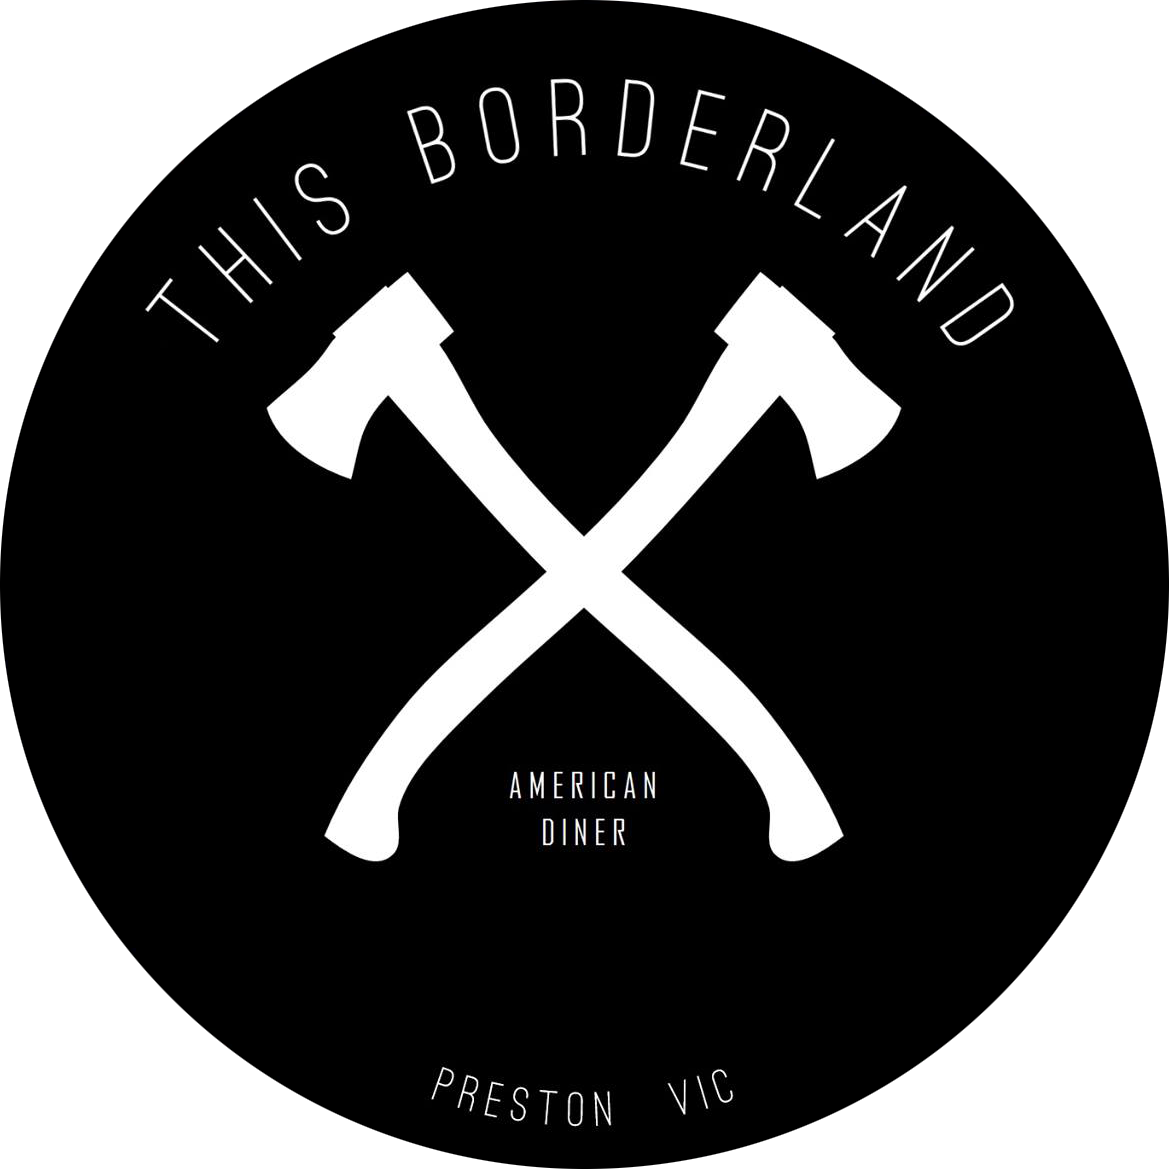 This Borderland